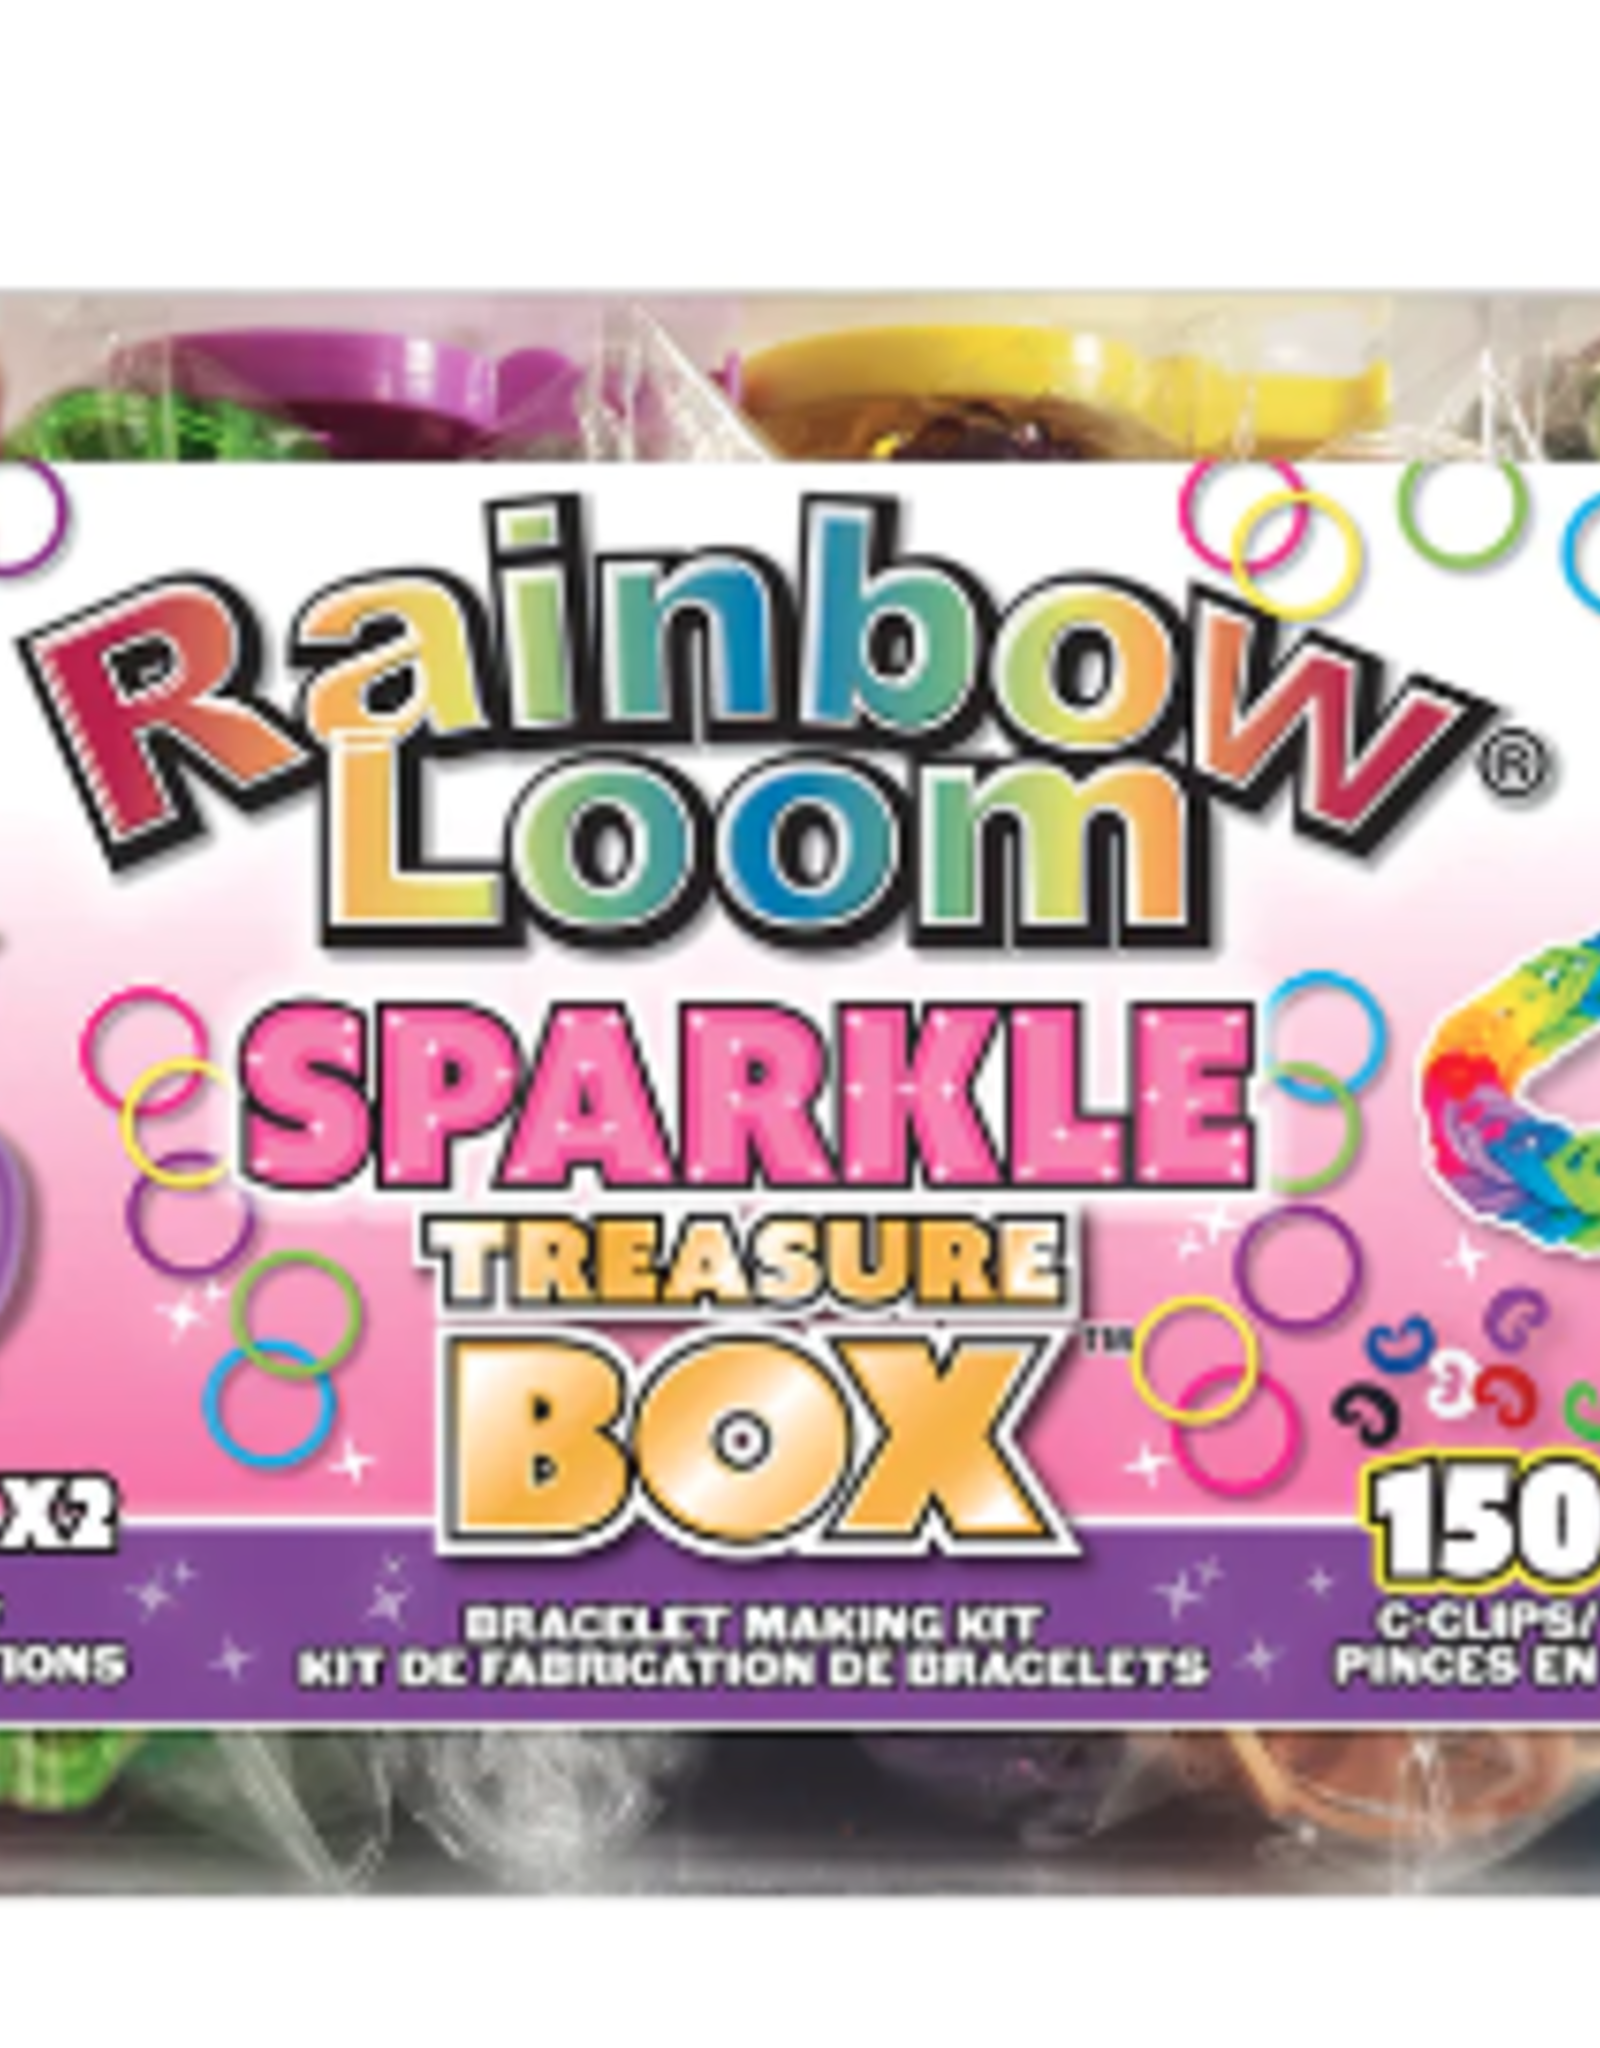 Playwell Rainbow Loom Treasure Box Sparkles